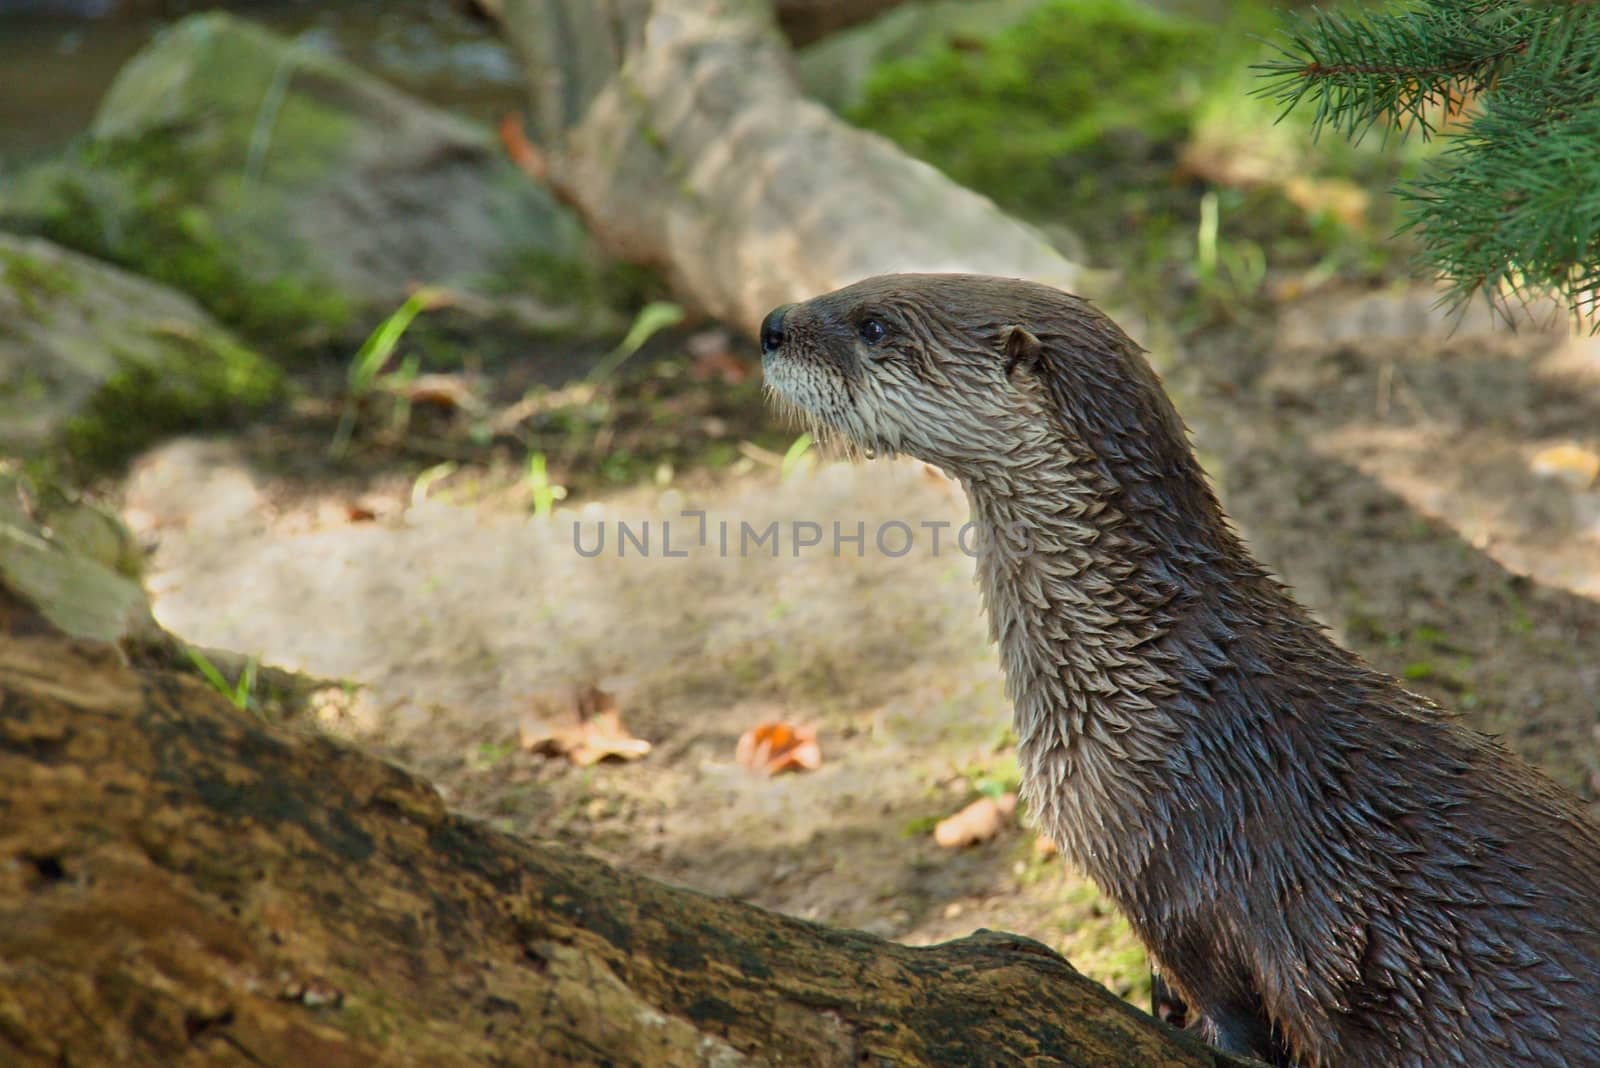 Wild water otter by Dermot68